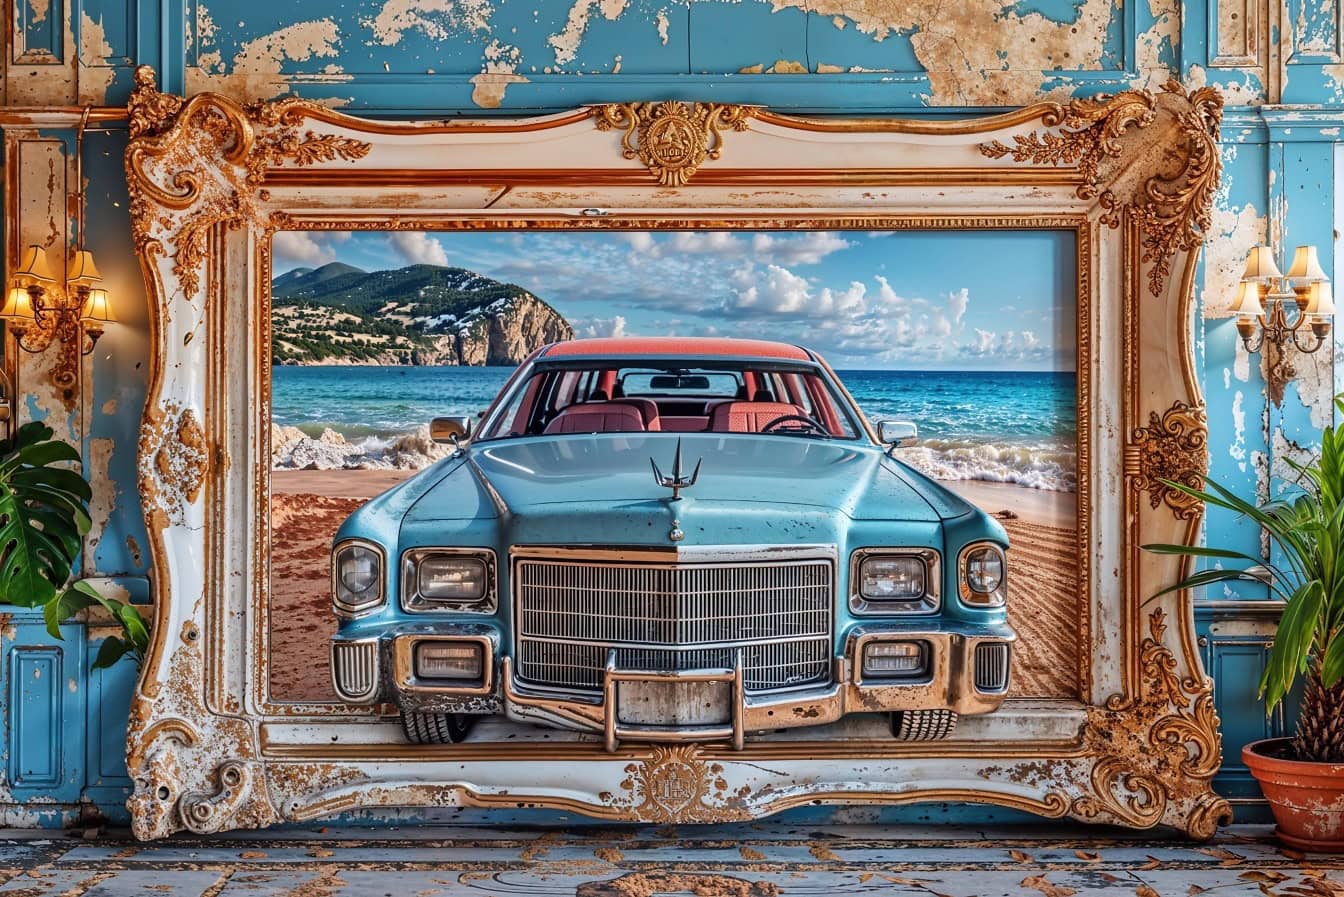 Uma grande imagem 3D de um carro Cadillac americano clássico está pendurada em uma parede em uma antiga moldura vitoriana